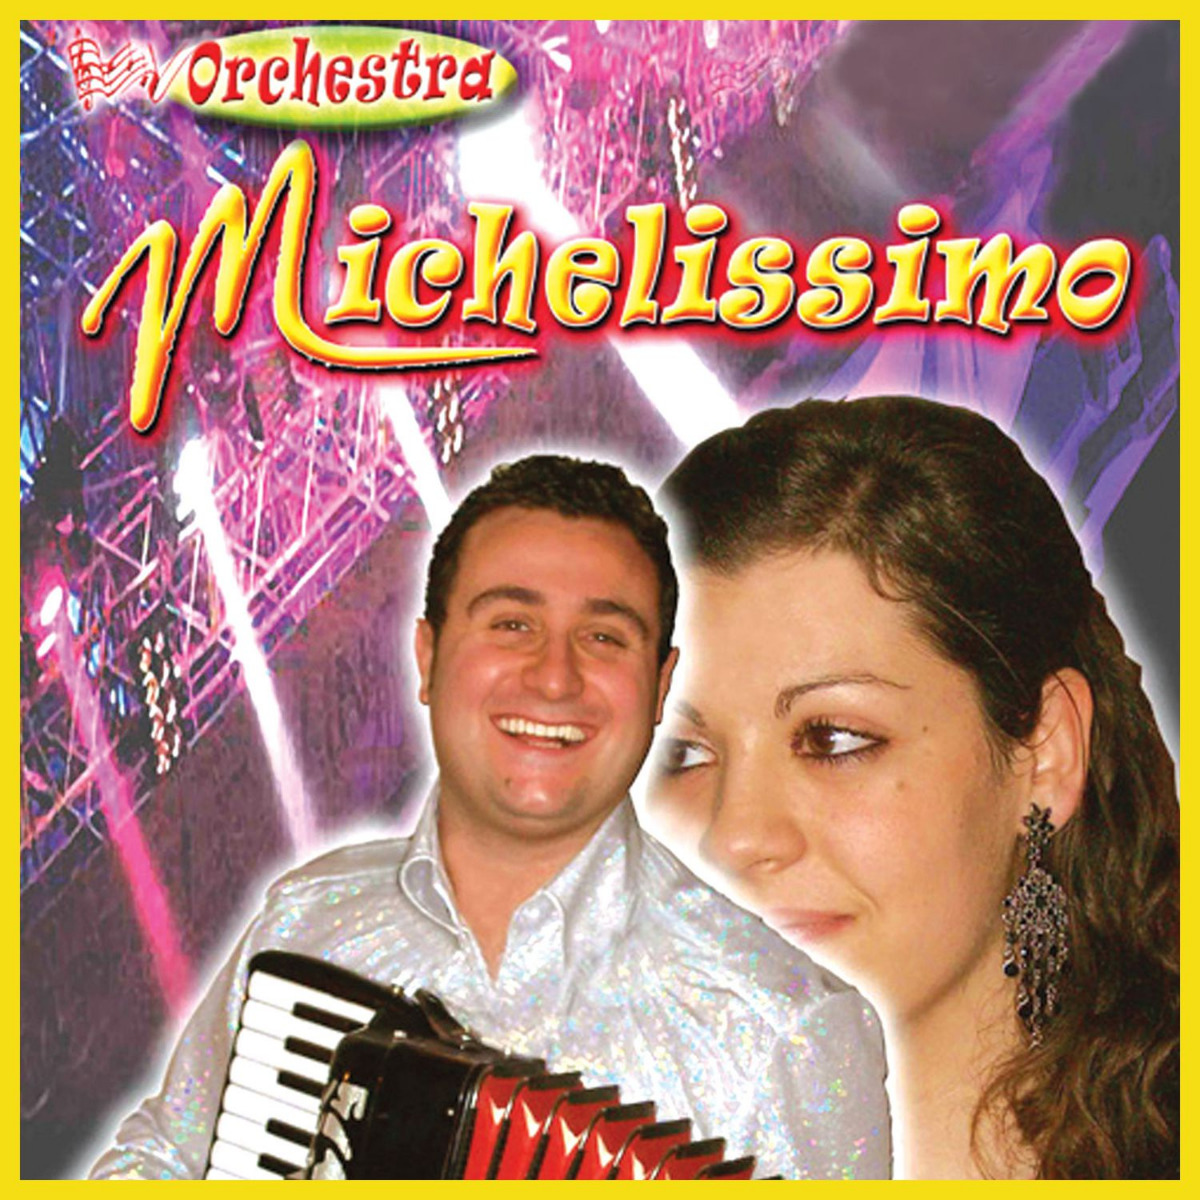 Orchestra Michelissimo